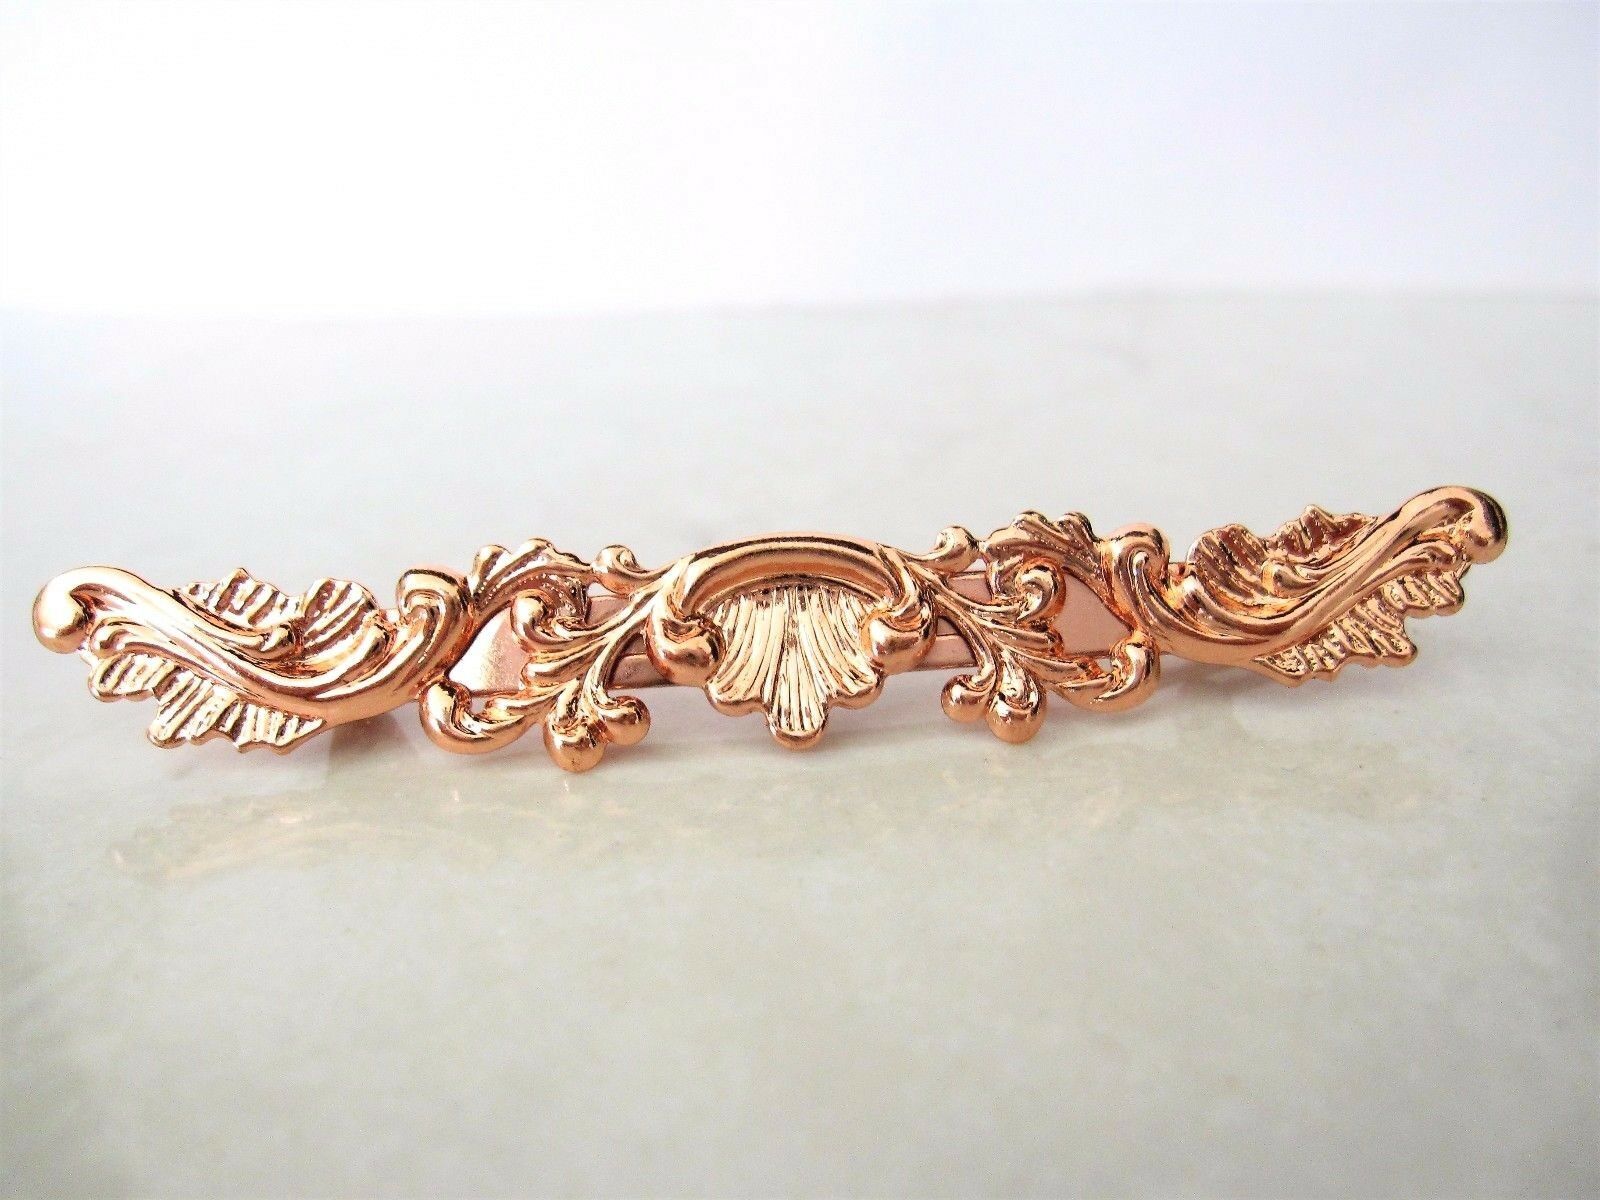 Small slim antique style rose gold/ copper filigree hair clip barrette